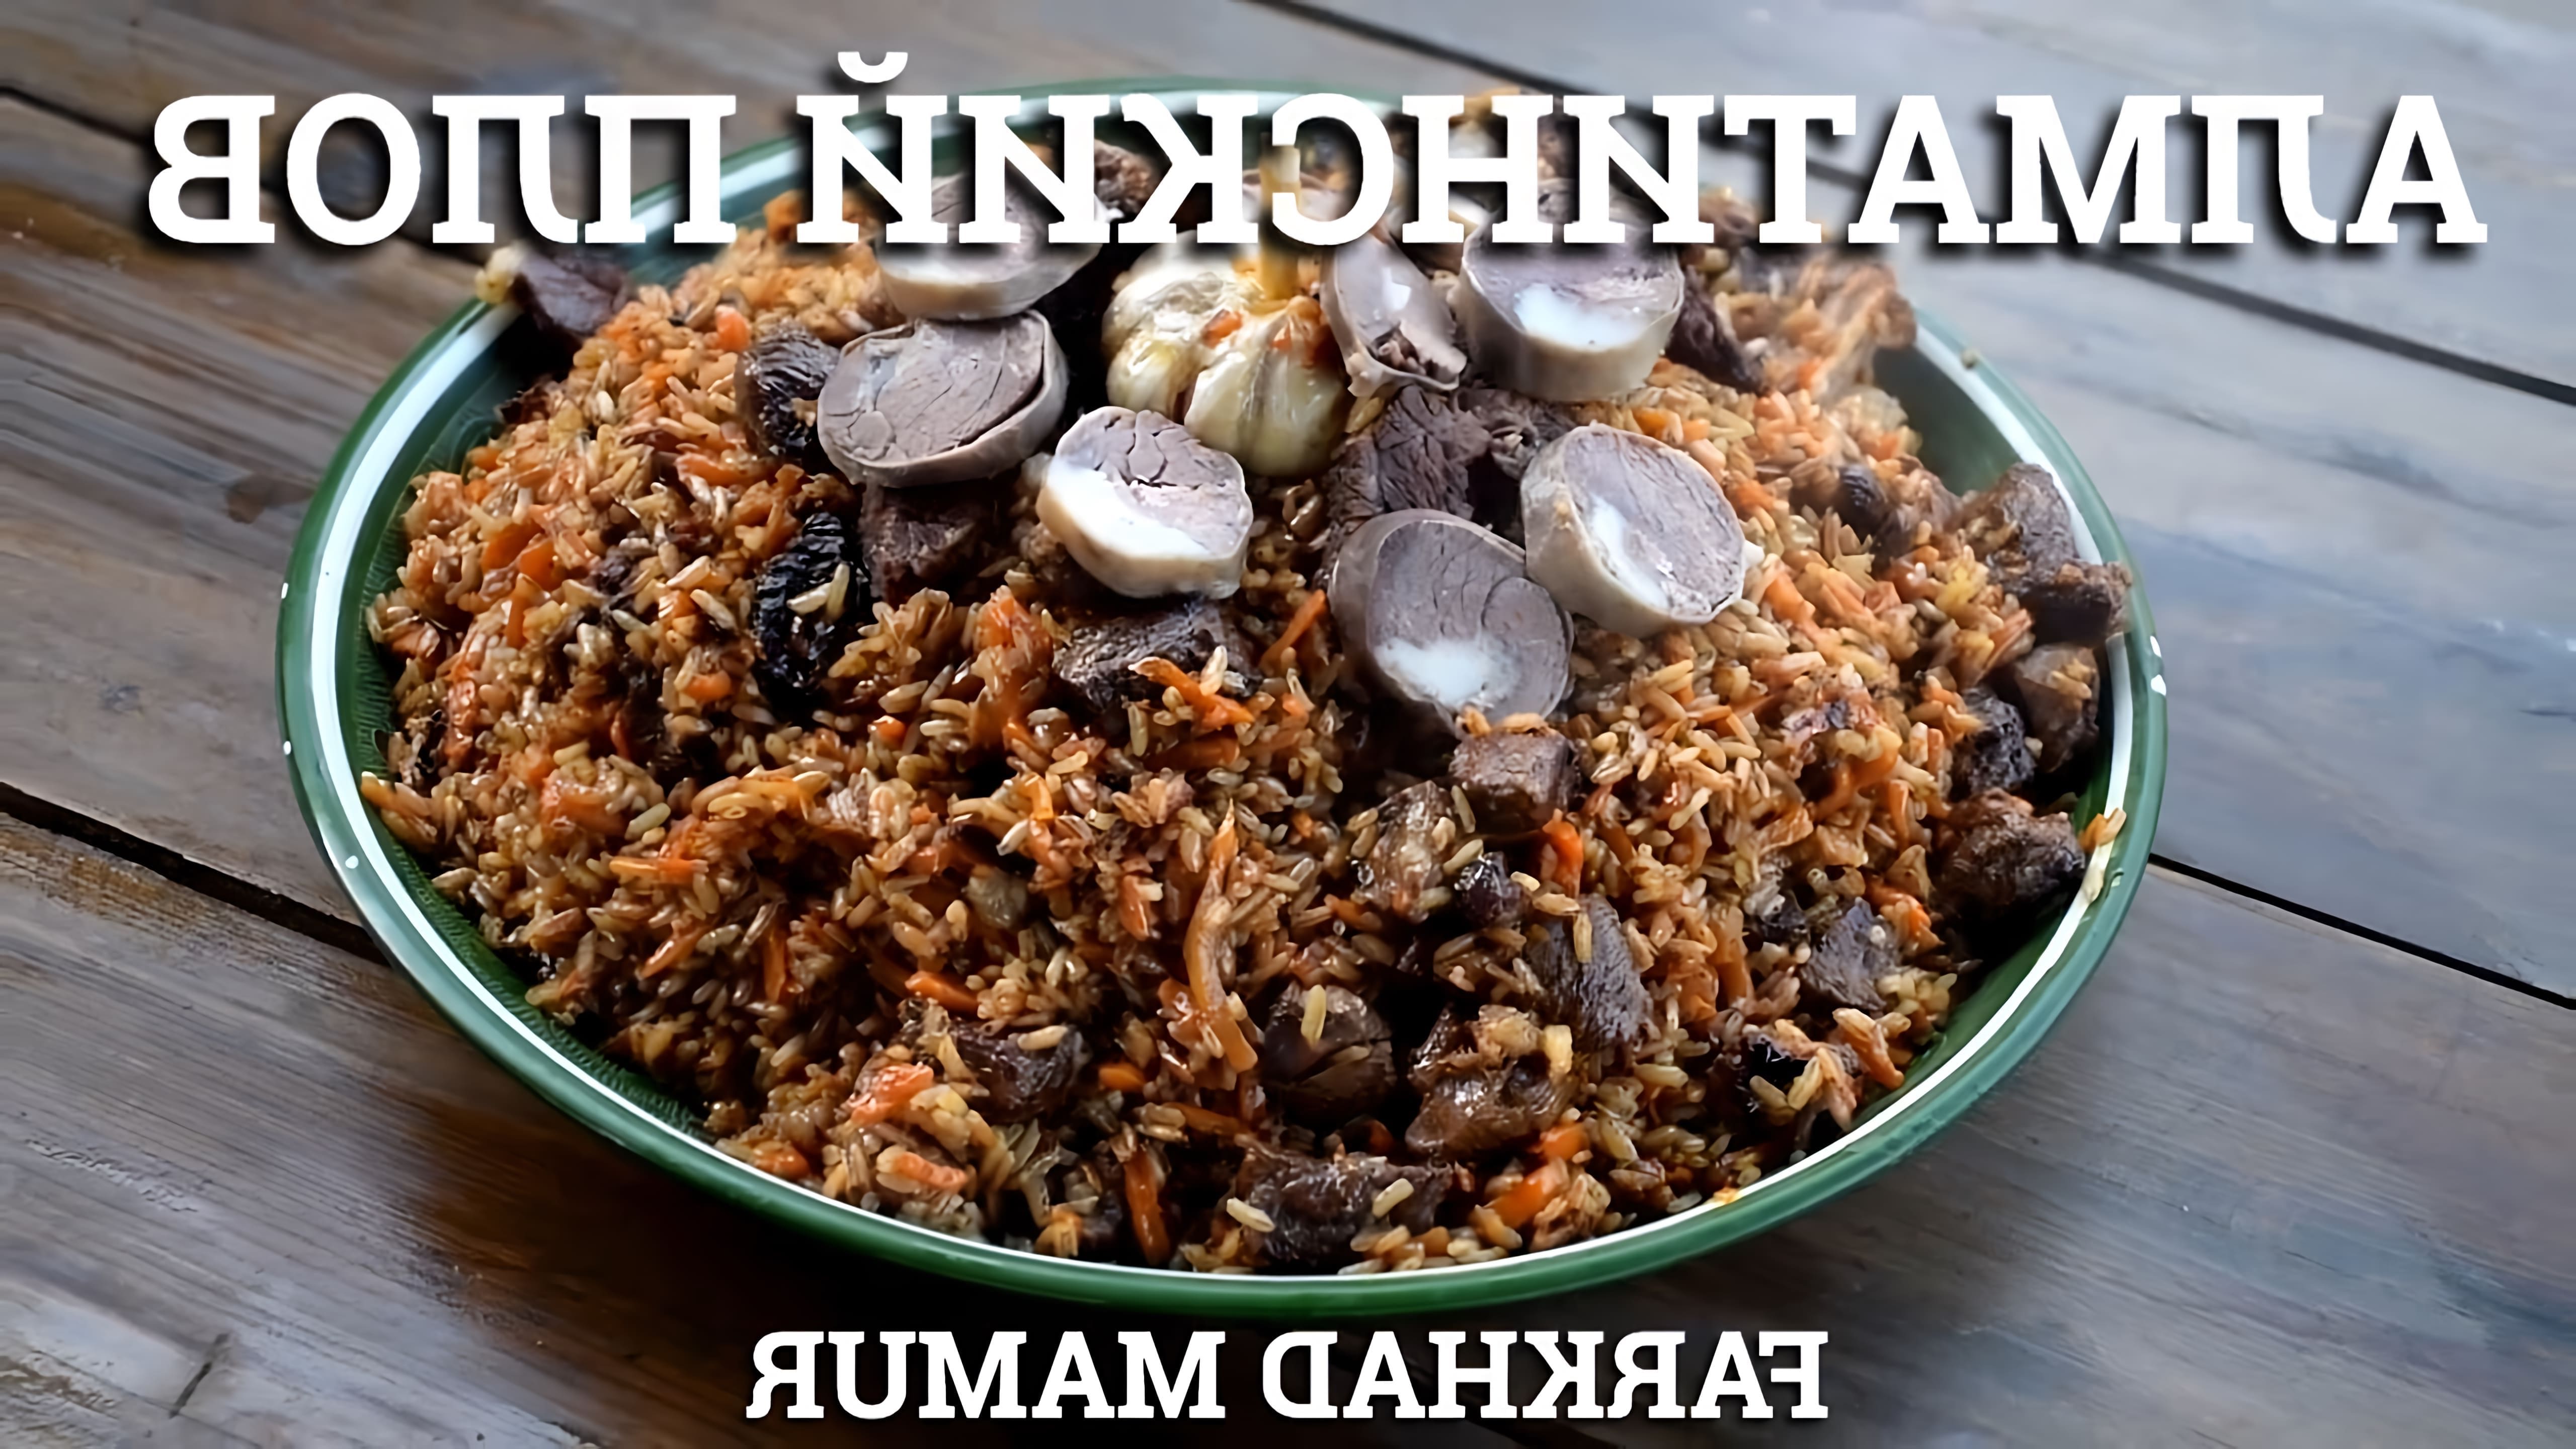 В этом видео демонстрируется процесс приготовления алматинского плова, который является одним из видов казахской национальной кухни